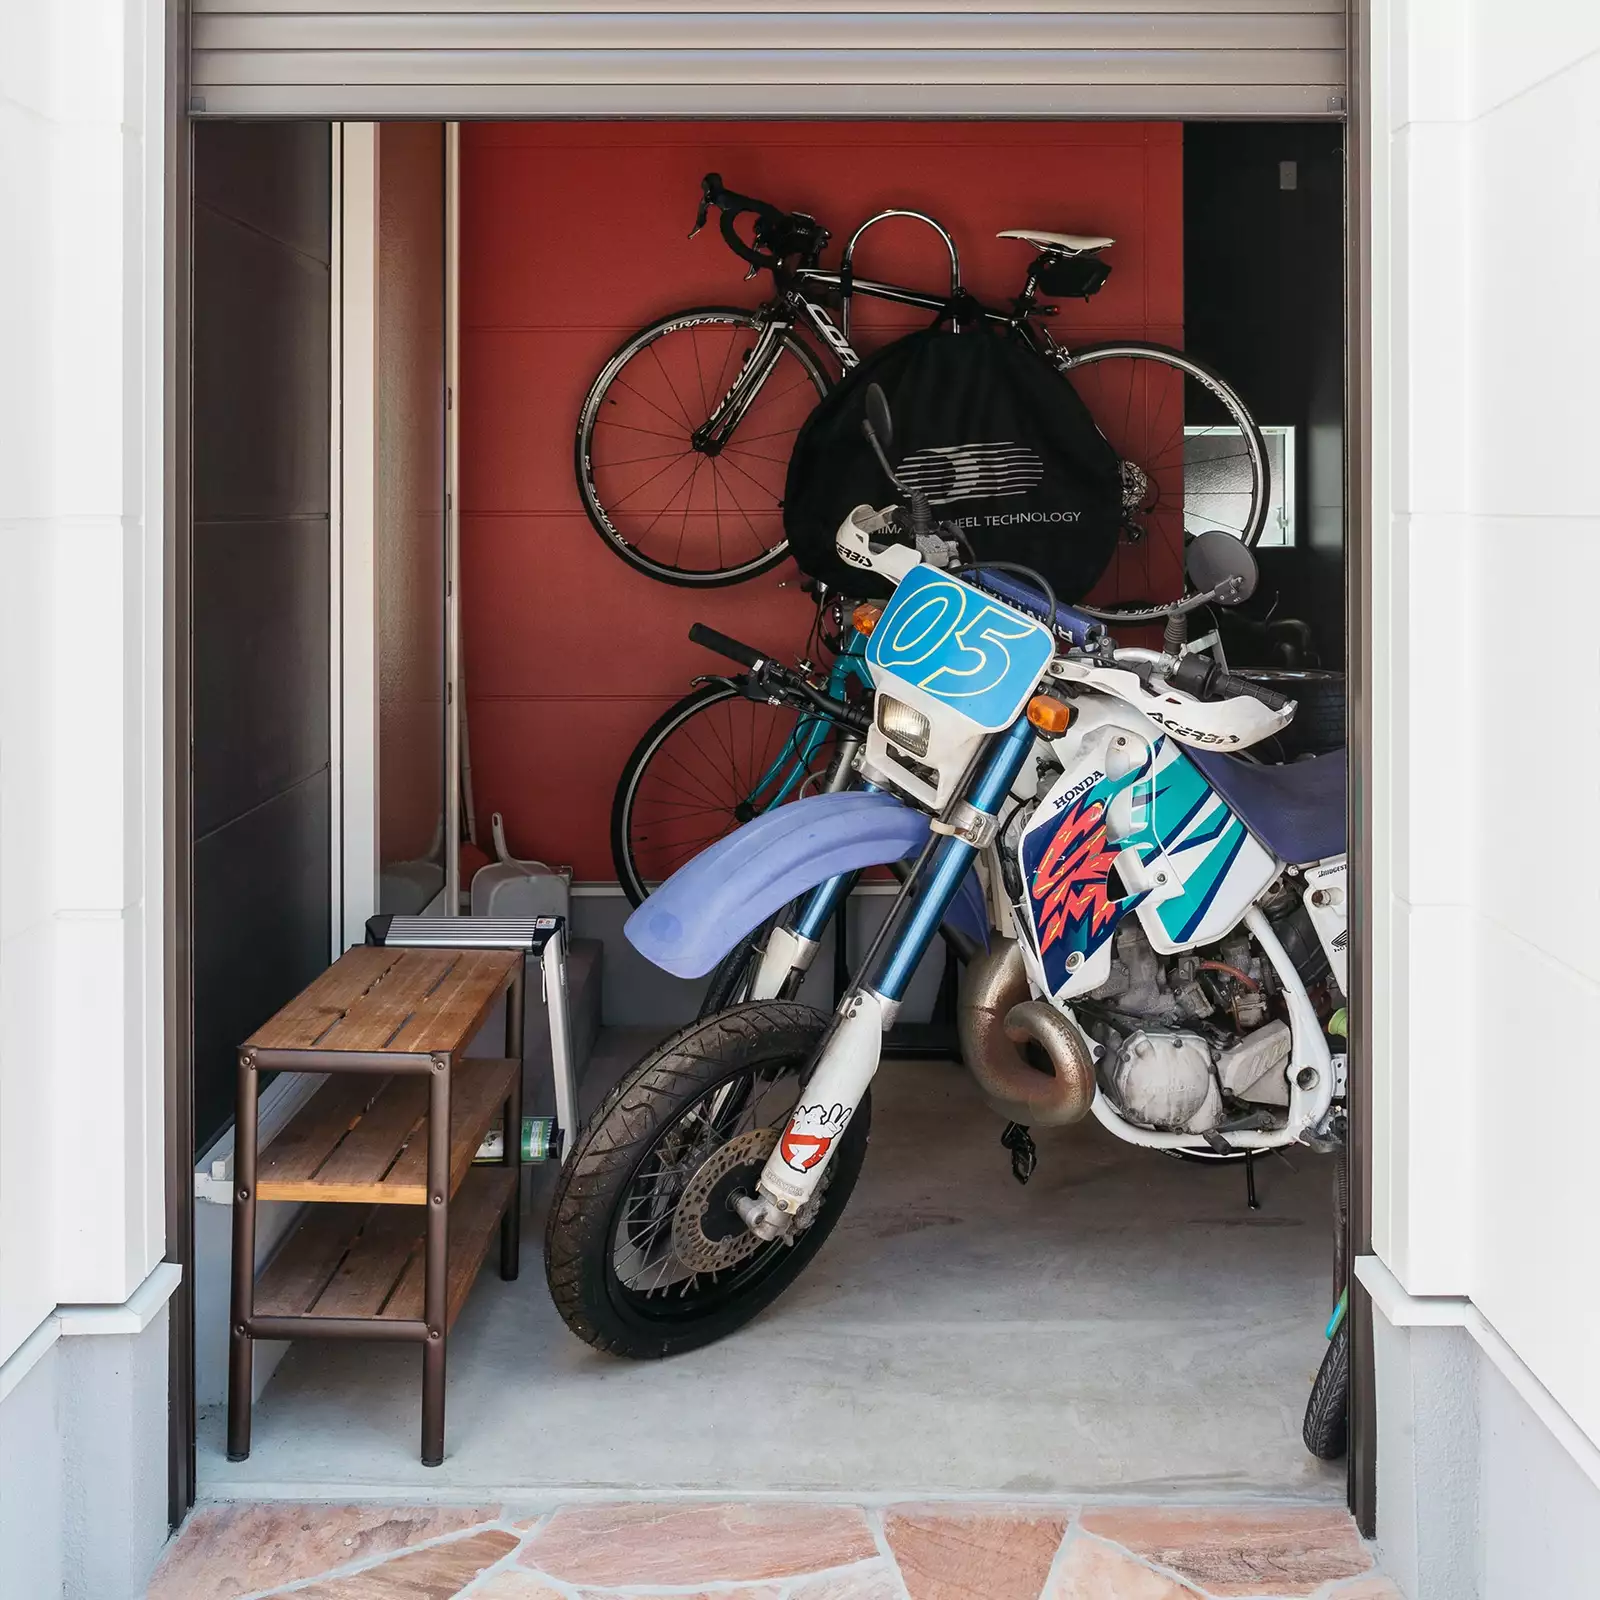 R+houseの物件のバイクガレージの写真です。バイクや自転車が出入りできるぐらいの大きさのシャッターで閉まるアーチ状の出入り口。